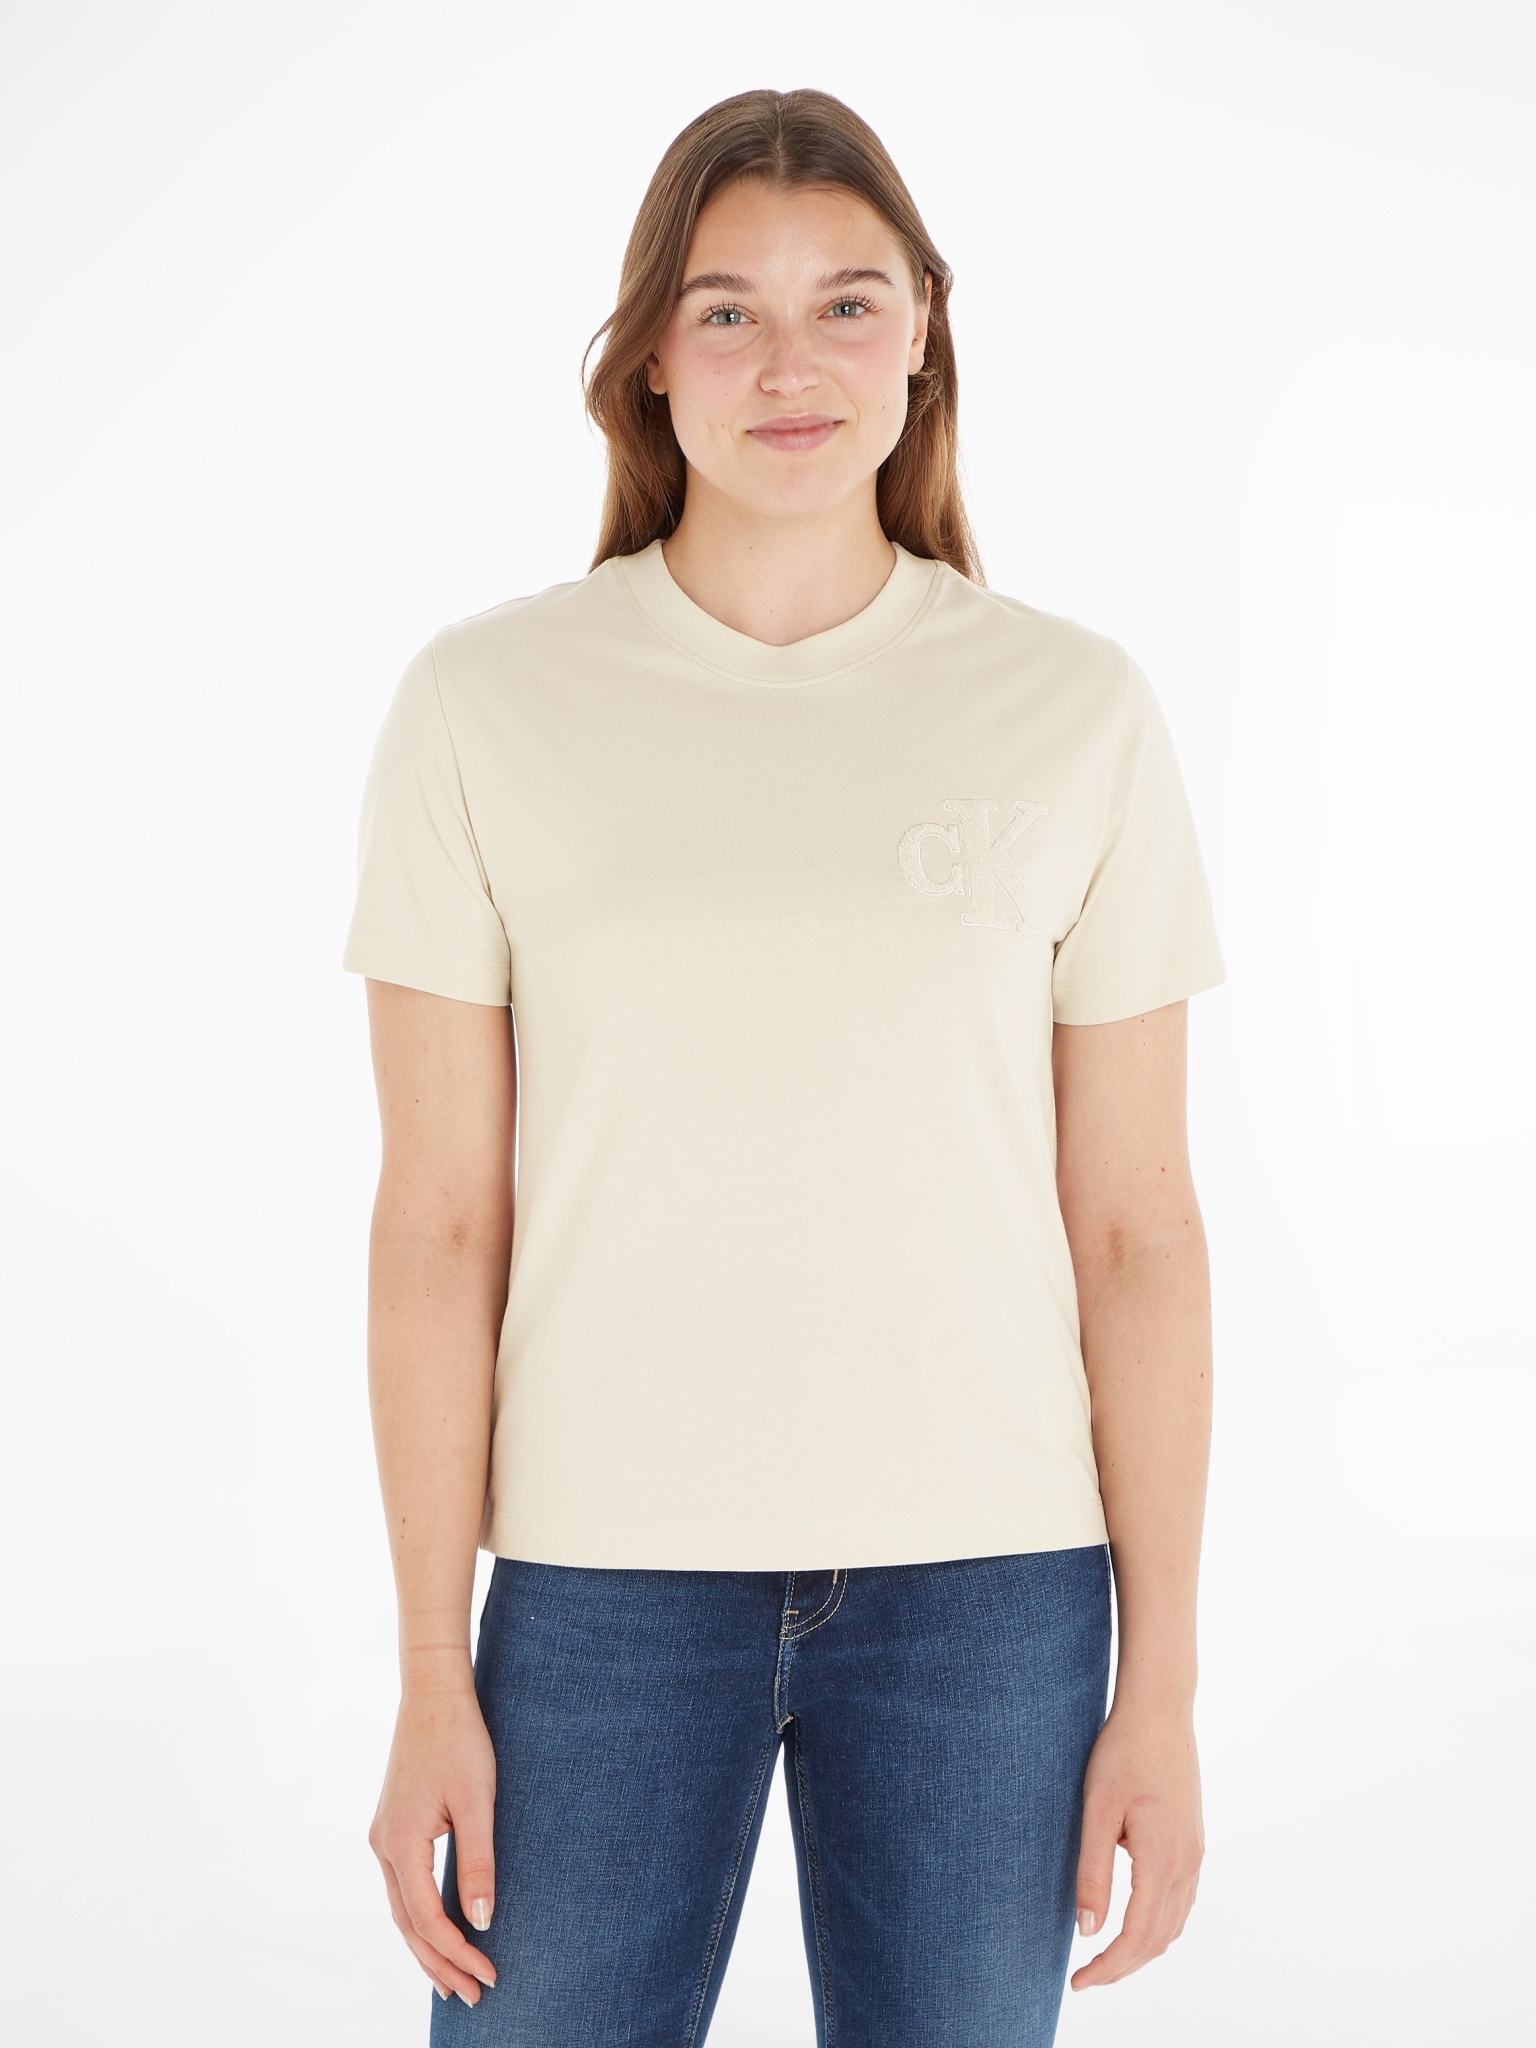 CALVIN KLEIN JEANS T-Shirt 10704135 kaufen | WÖHRL